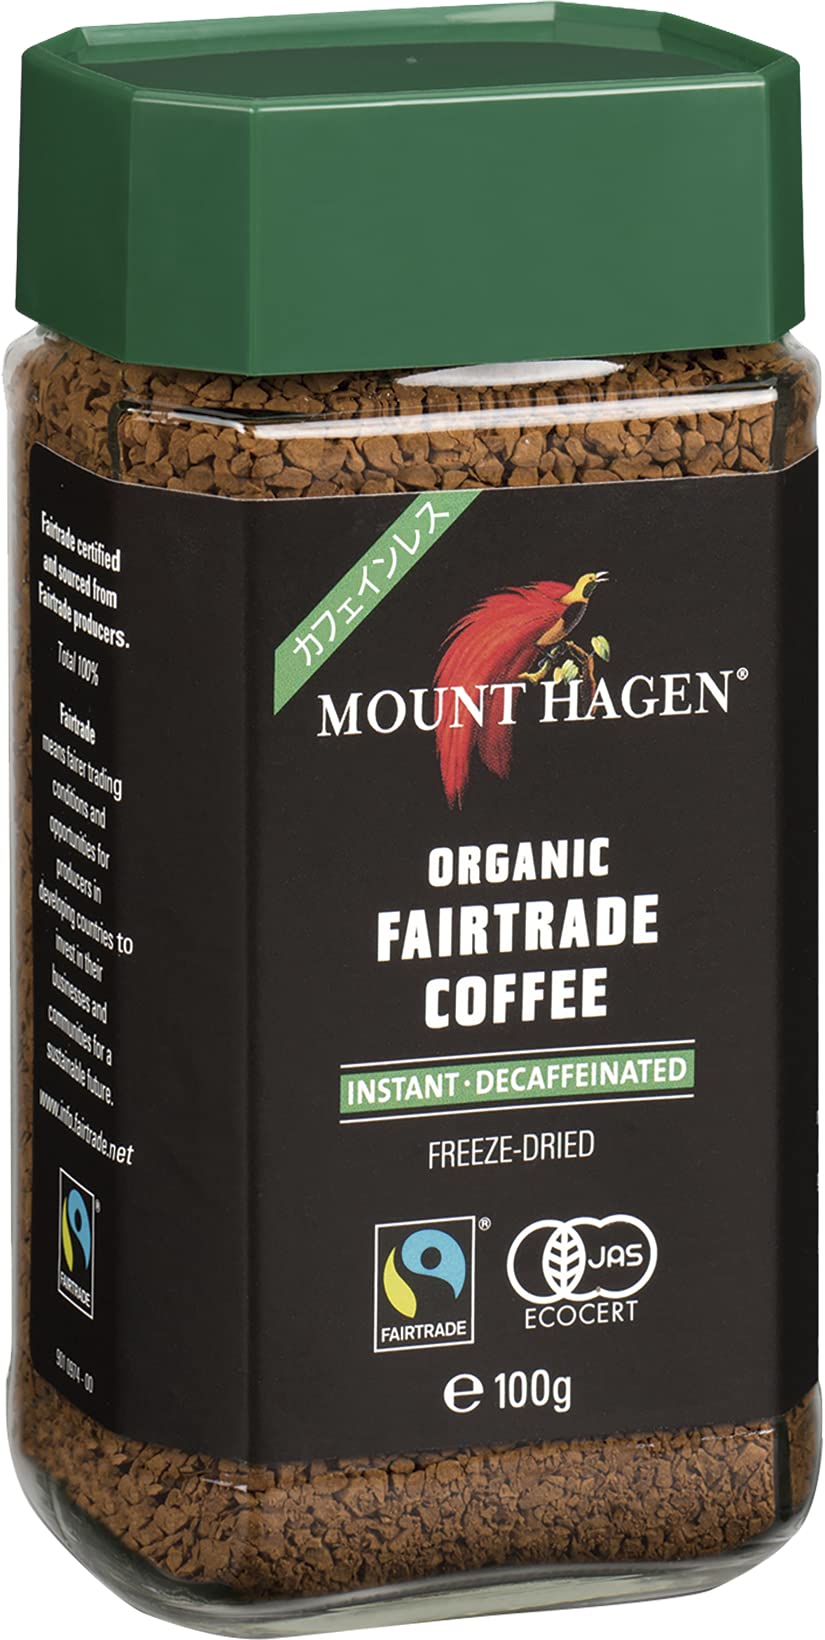 マウント ハーゲン カフェインレス　コーヒー マウントハーゲン オーガニック フェアトレード カフェインレスインスタントコーヒー 自然なカフェイン除去プロセスで香りそのままカフェイン99.7%カット 100グラム (x 1)